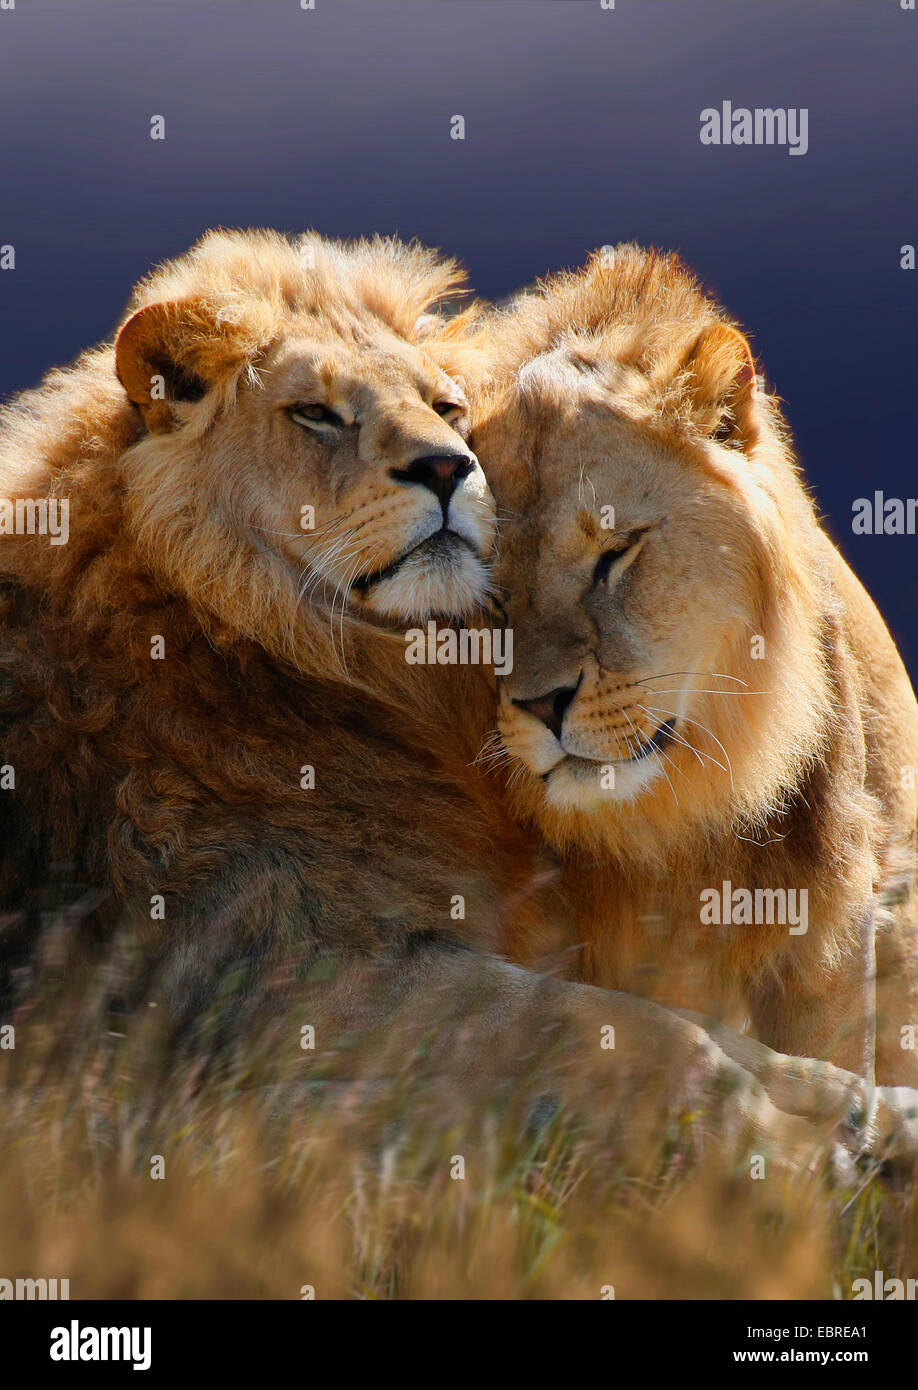 lion (Panthera leo), two smooching lions, Tanzania, Serengeti National Park Stock Photo